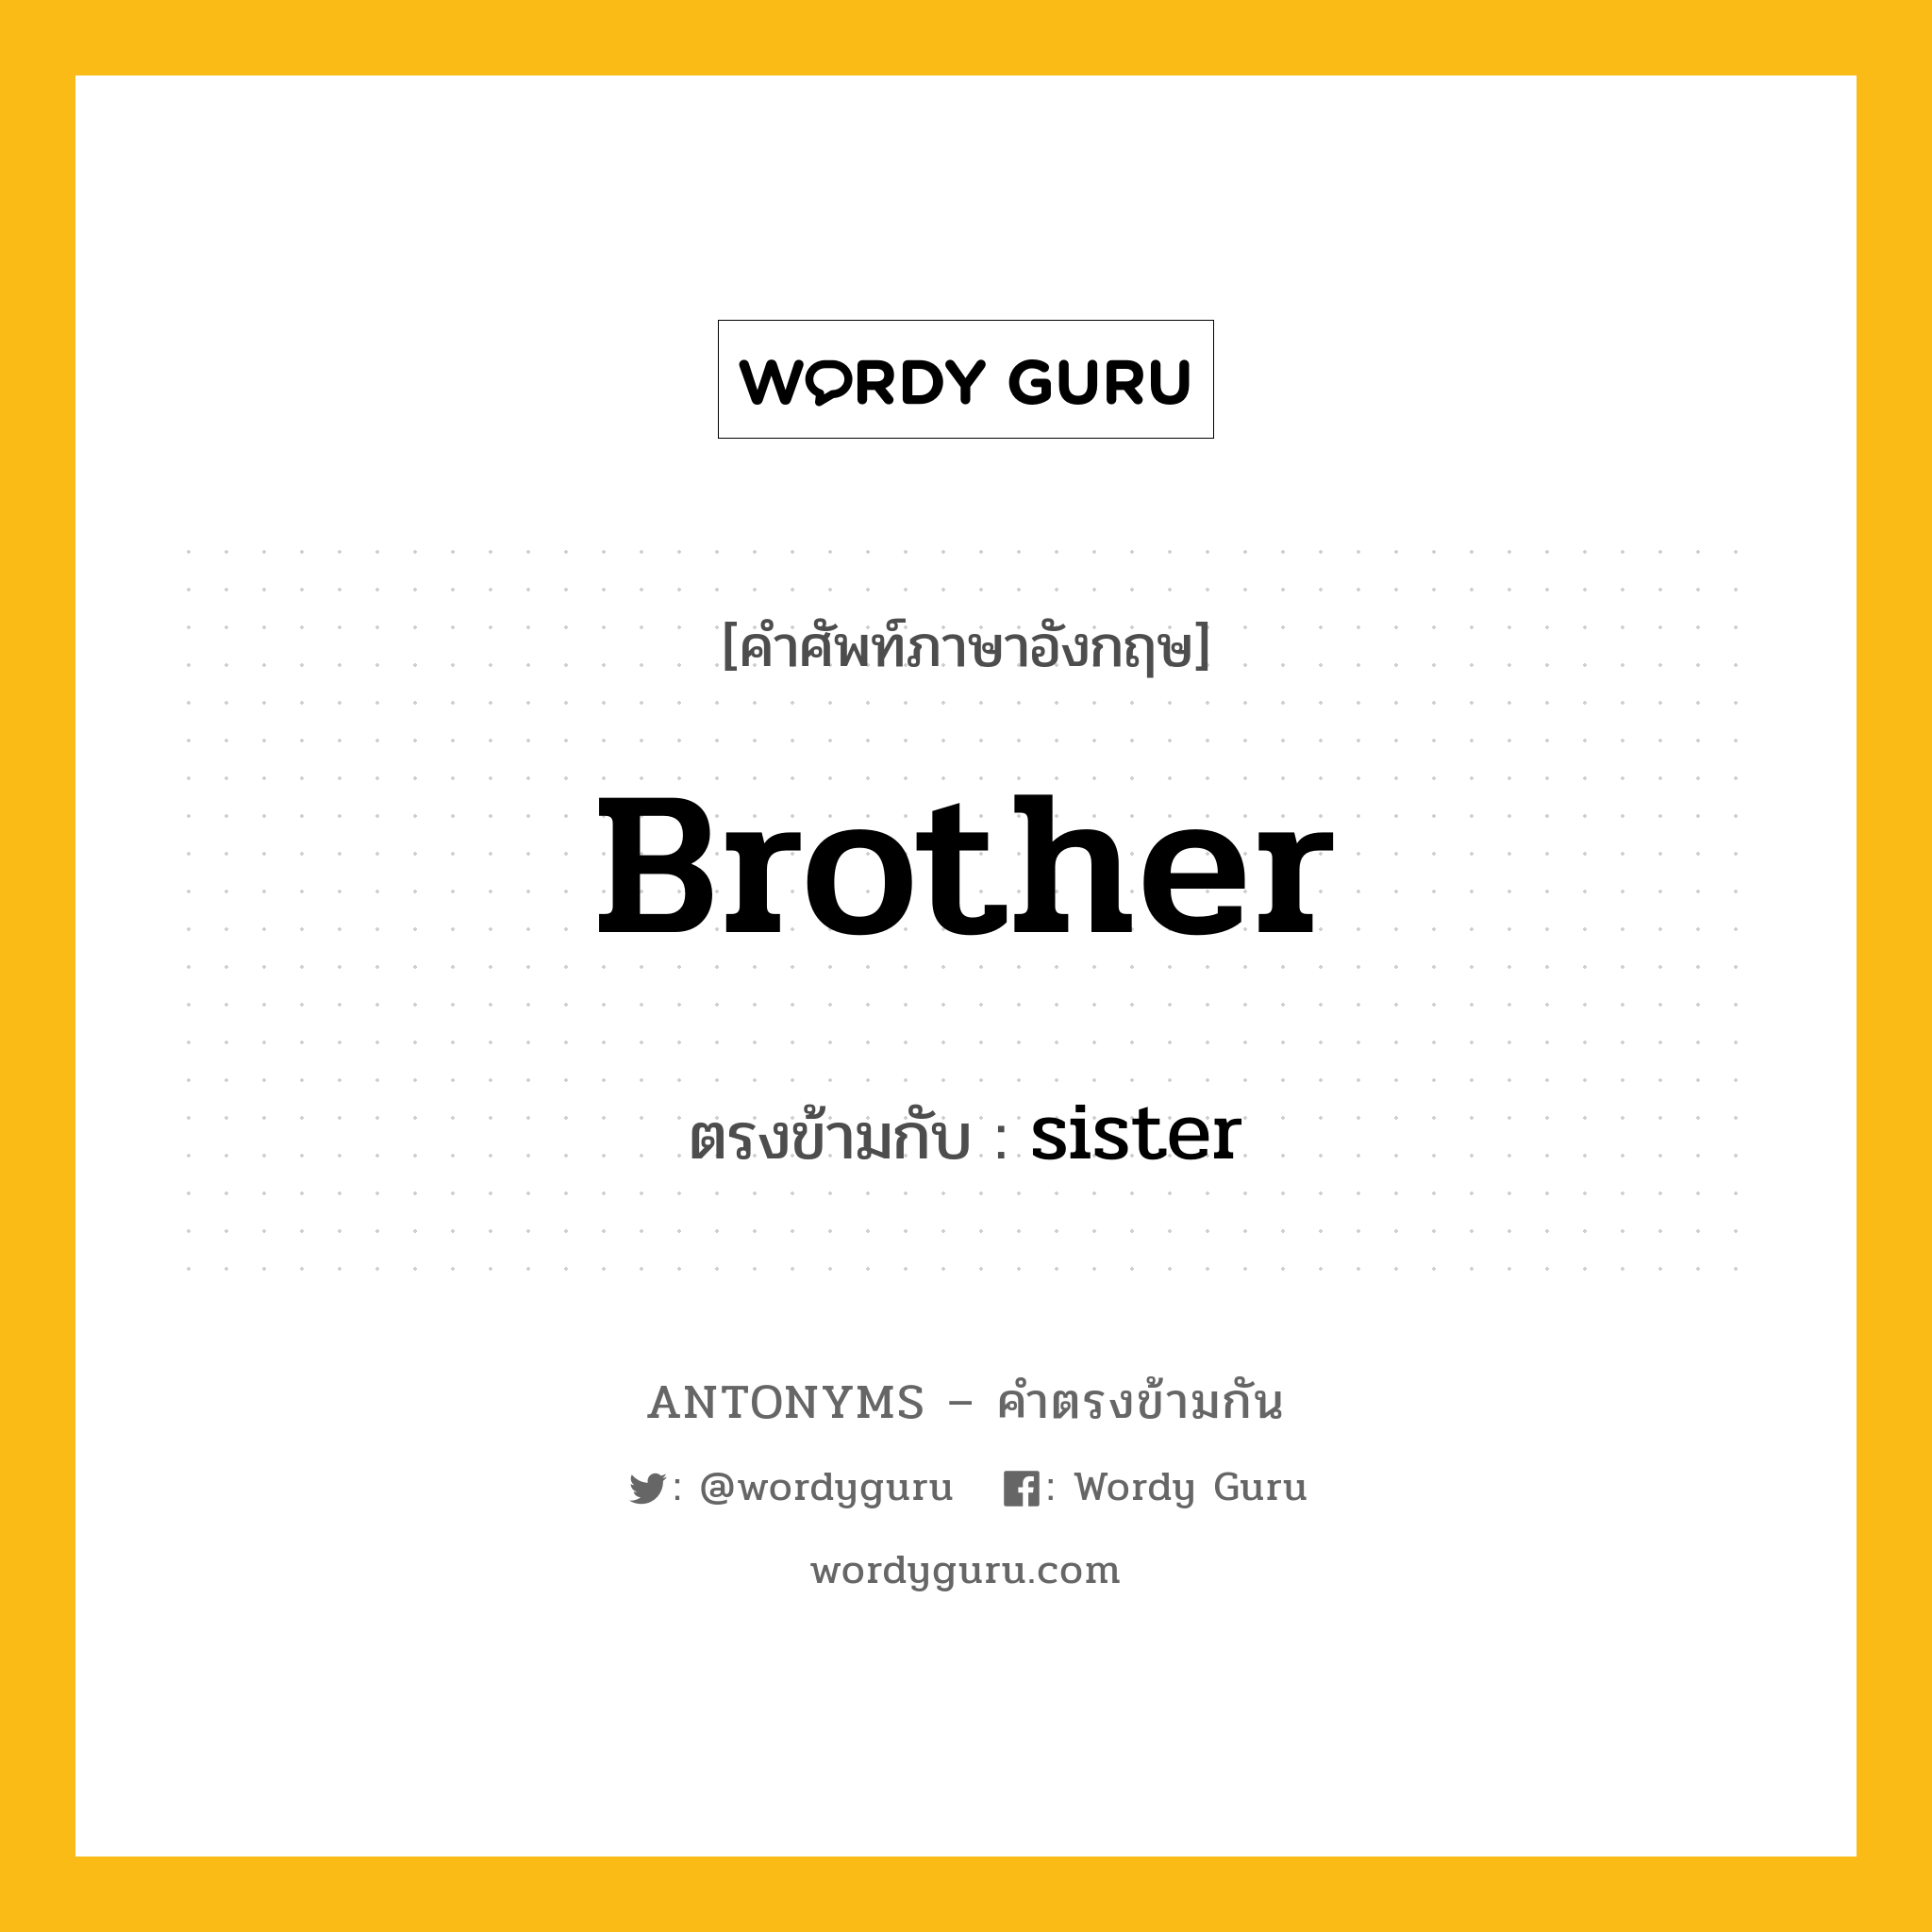 brother เป็นคำตรงข้ามกับคำไหนบ้าง?, คำศัพท์ภาษาอังกฤษ brother ตรงข้ามกับ sister หมวด sister